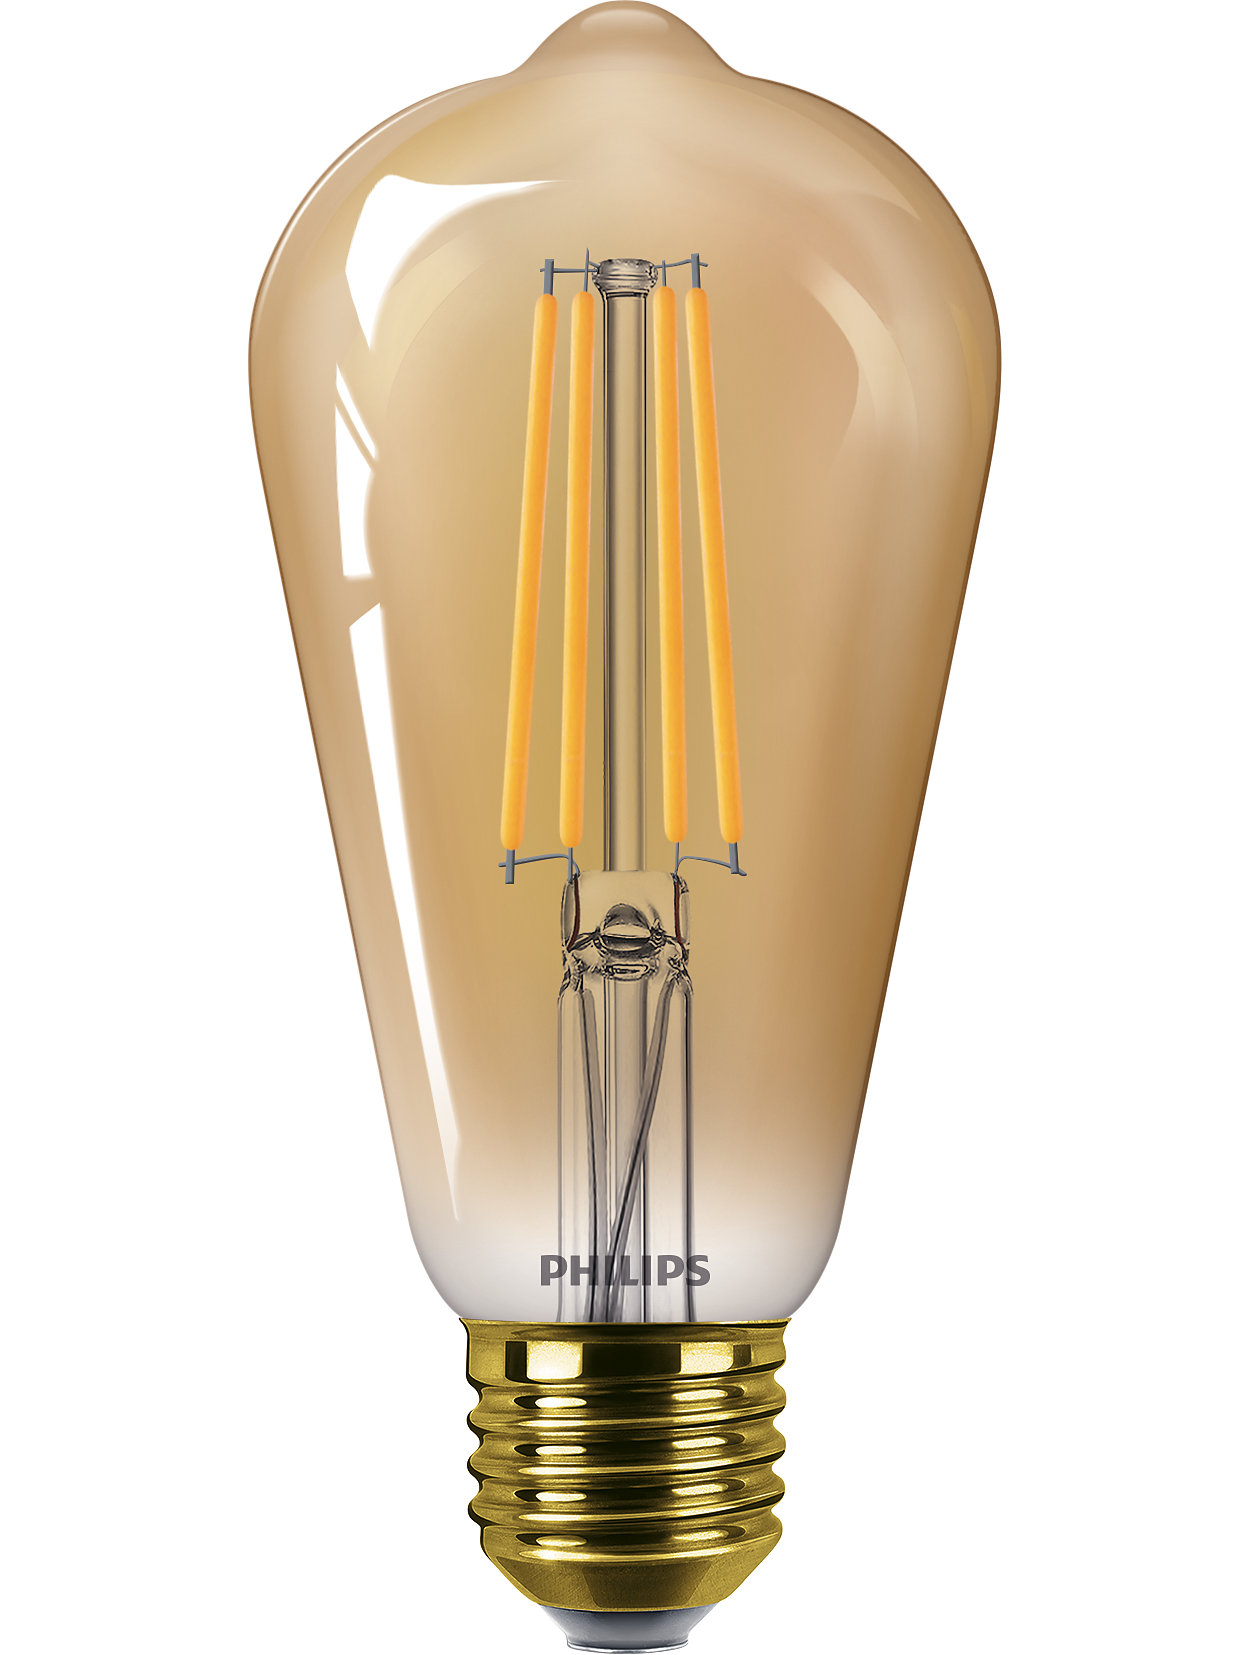 Namams skirta šiuolaikinė šviesos diodų lemputė